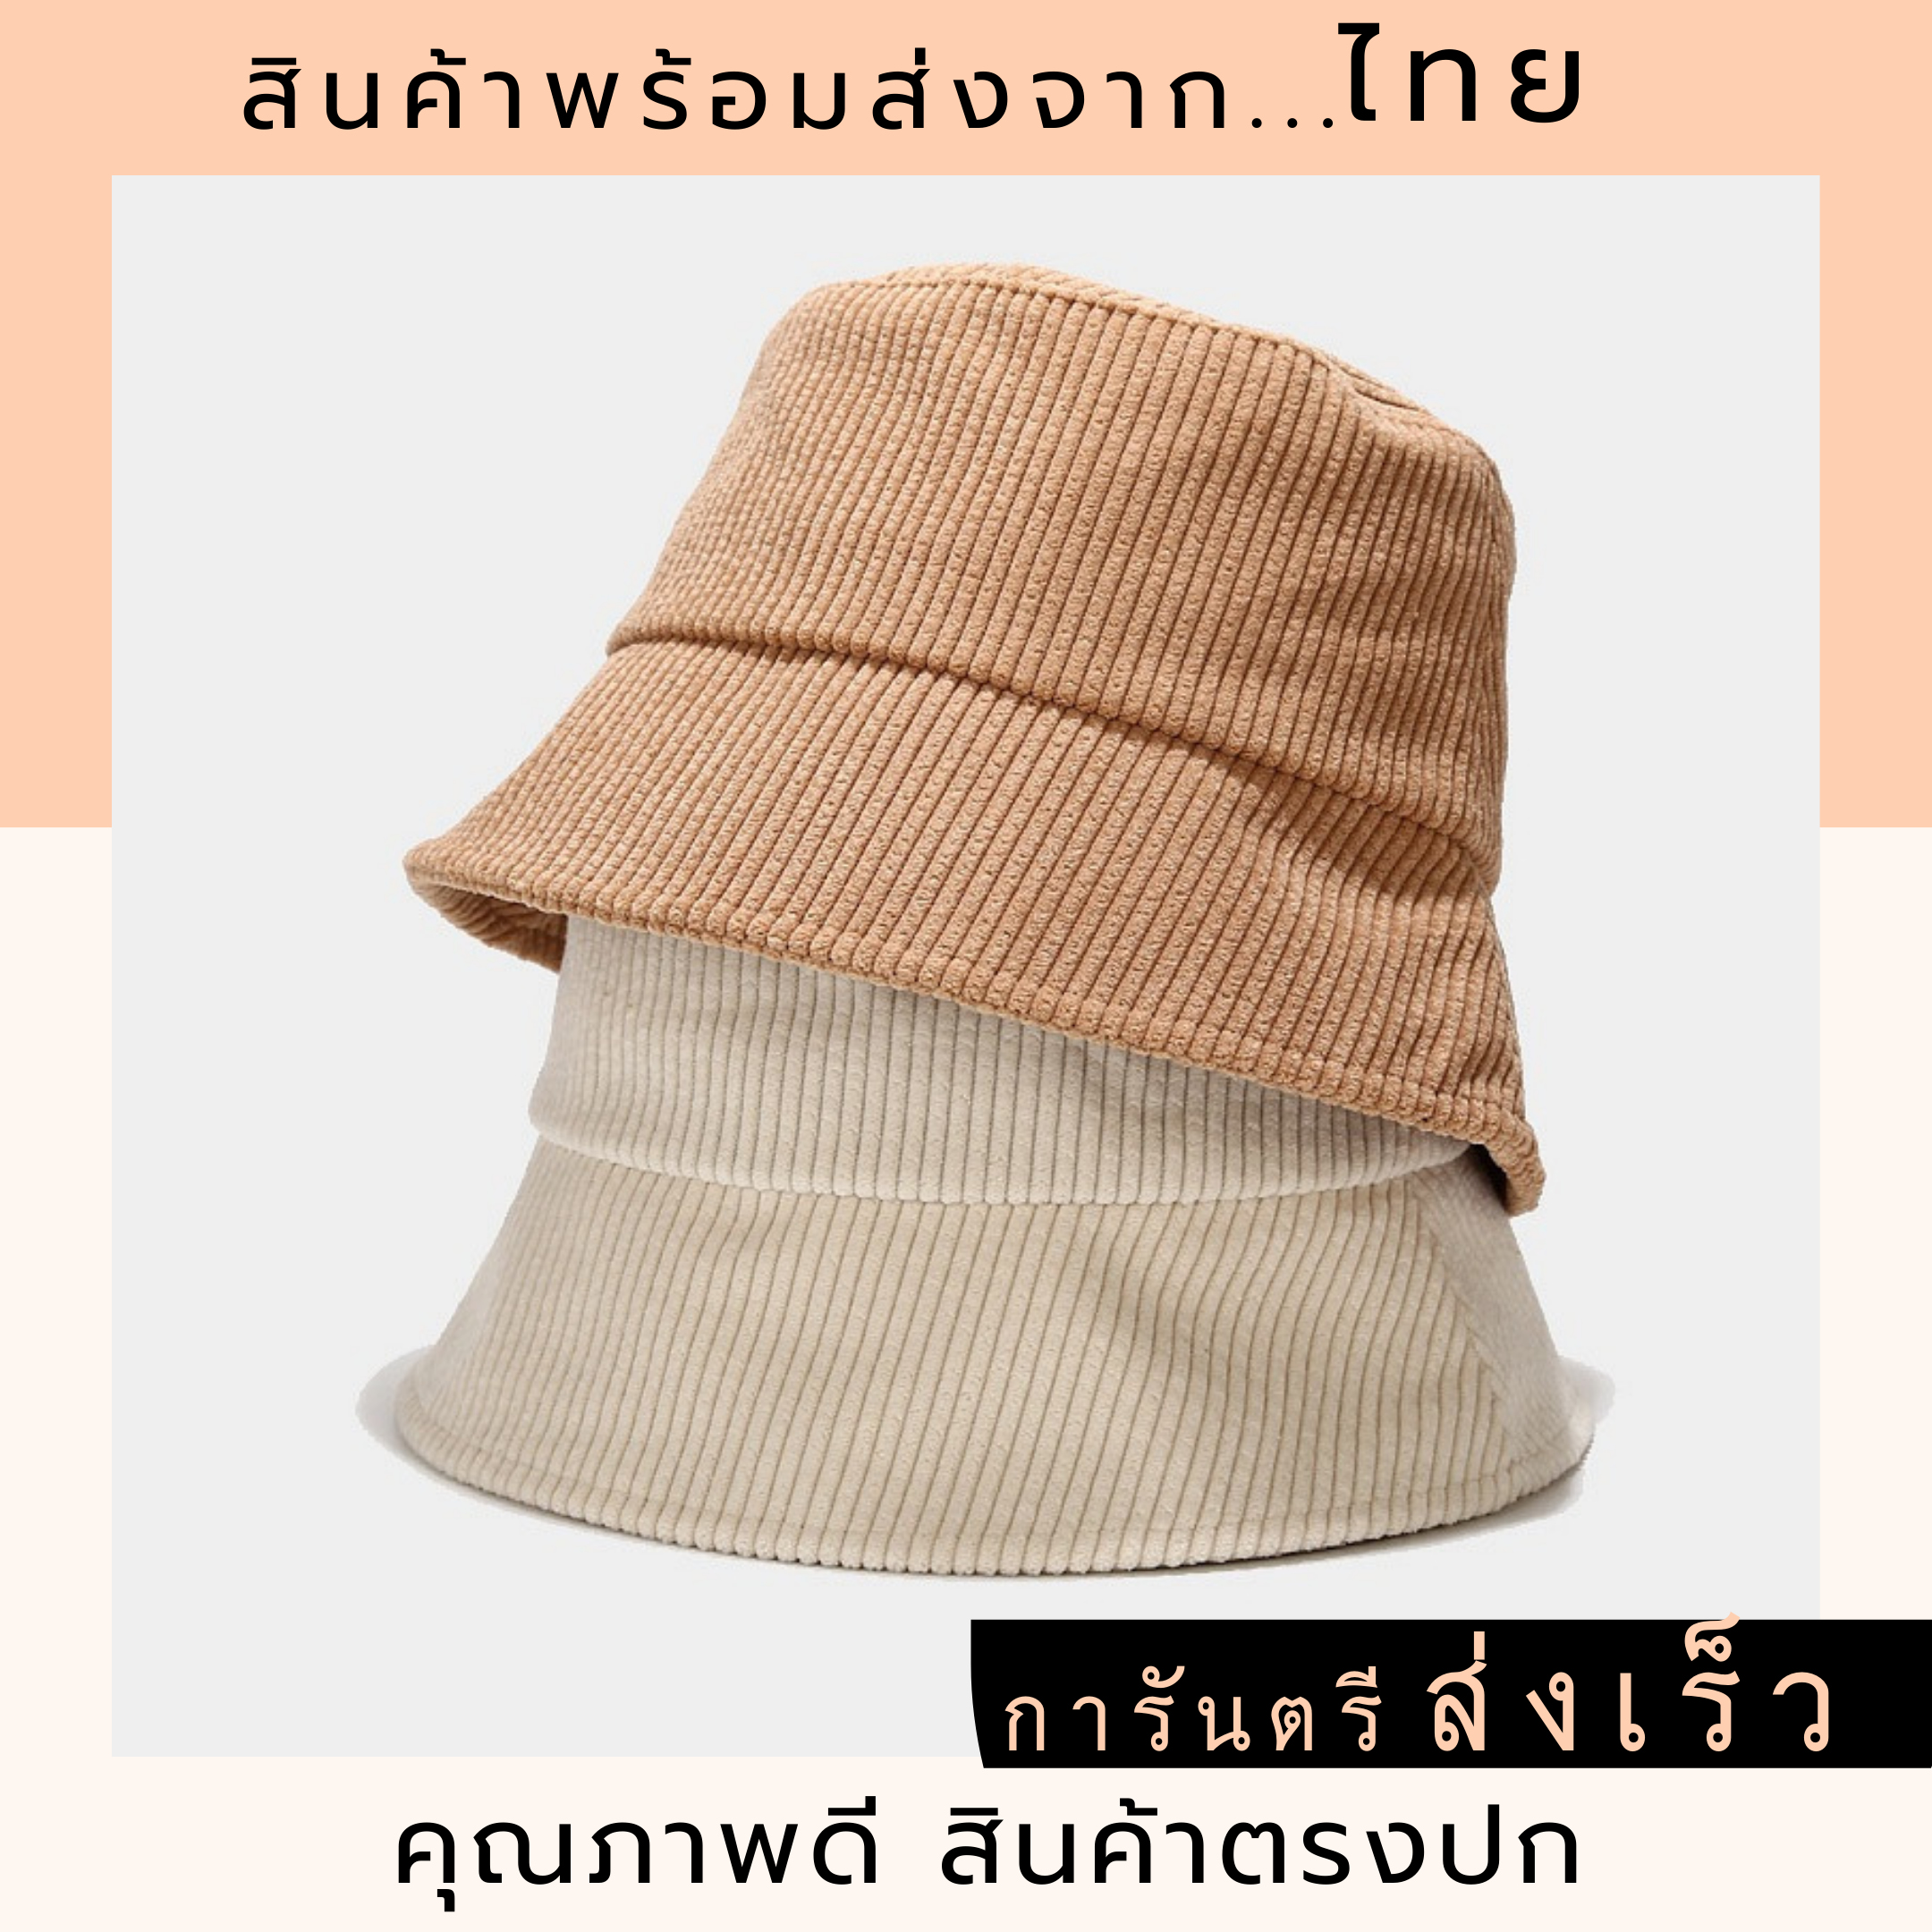 หมวกบักเก็ต bucket hat หมวกผ้าลูกฟูก หมวกปีกรอบ หมวกกันแดด สไตล์เกาหลี หมวกสีเอิร์ทโทน